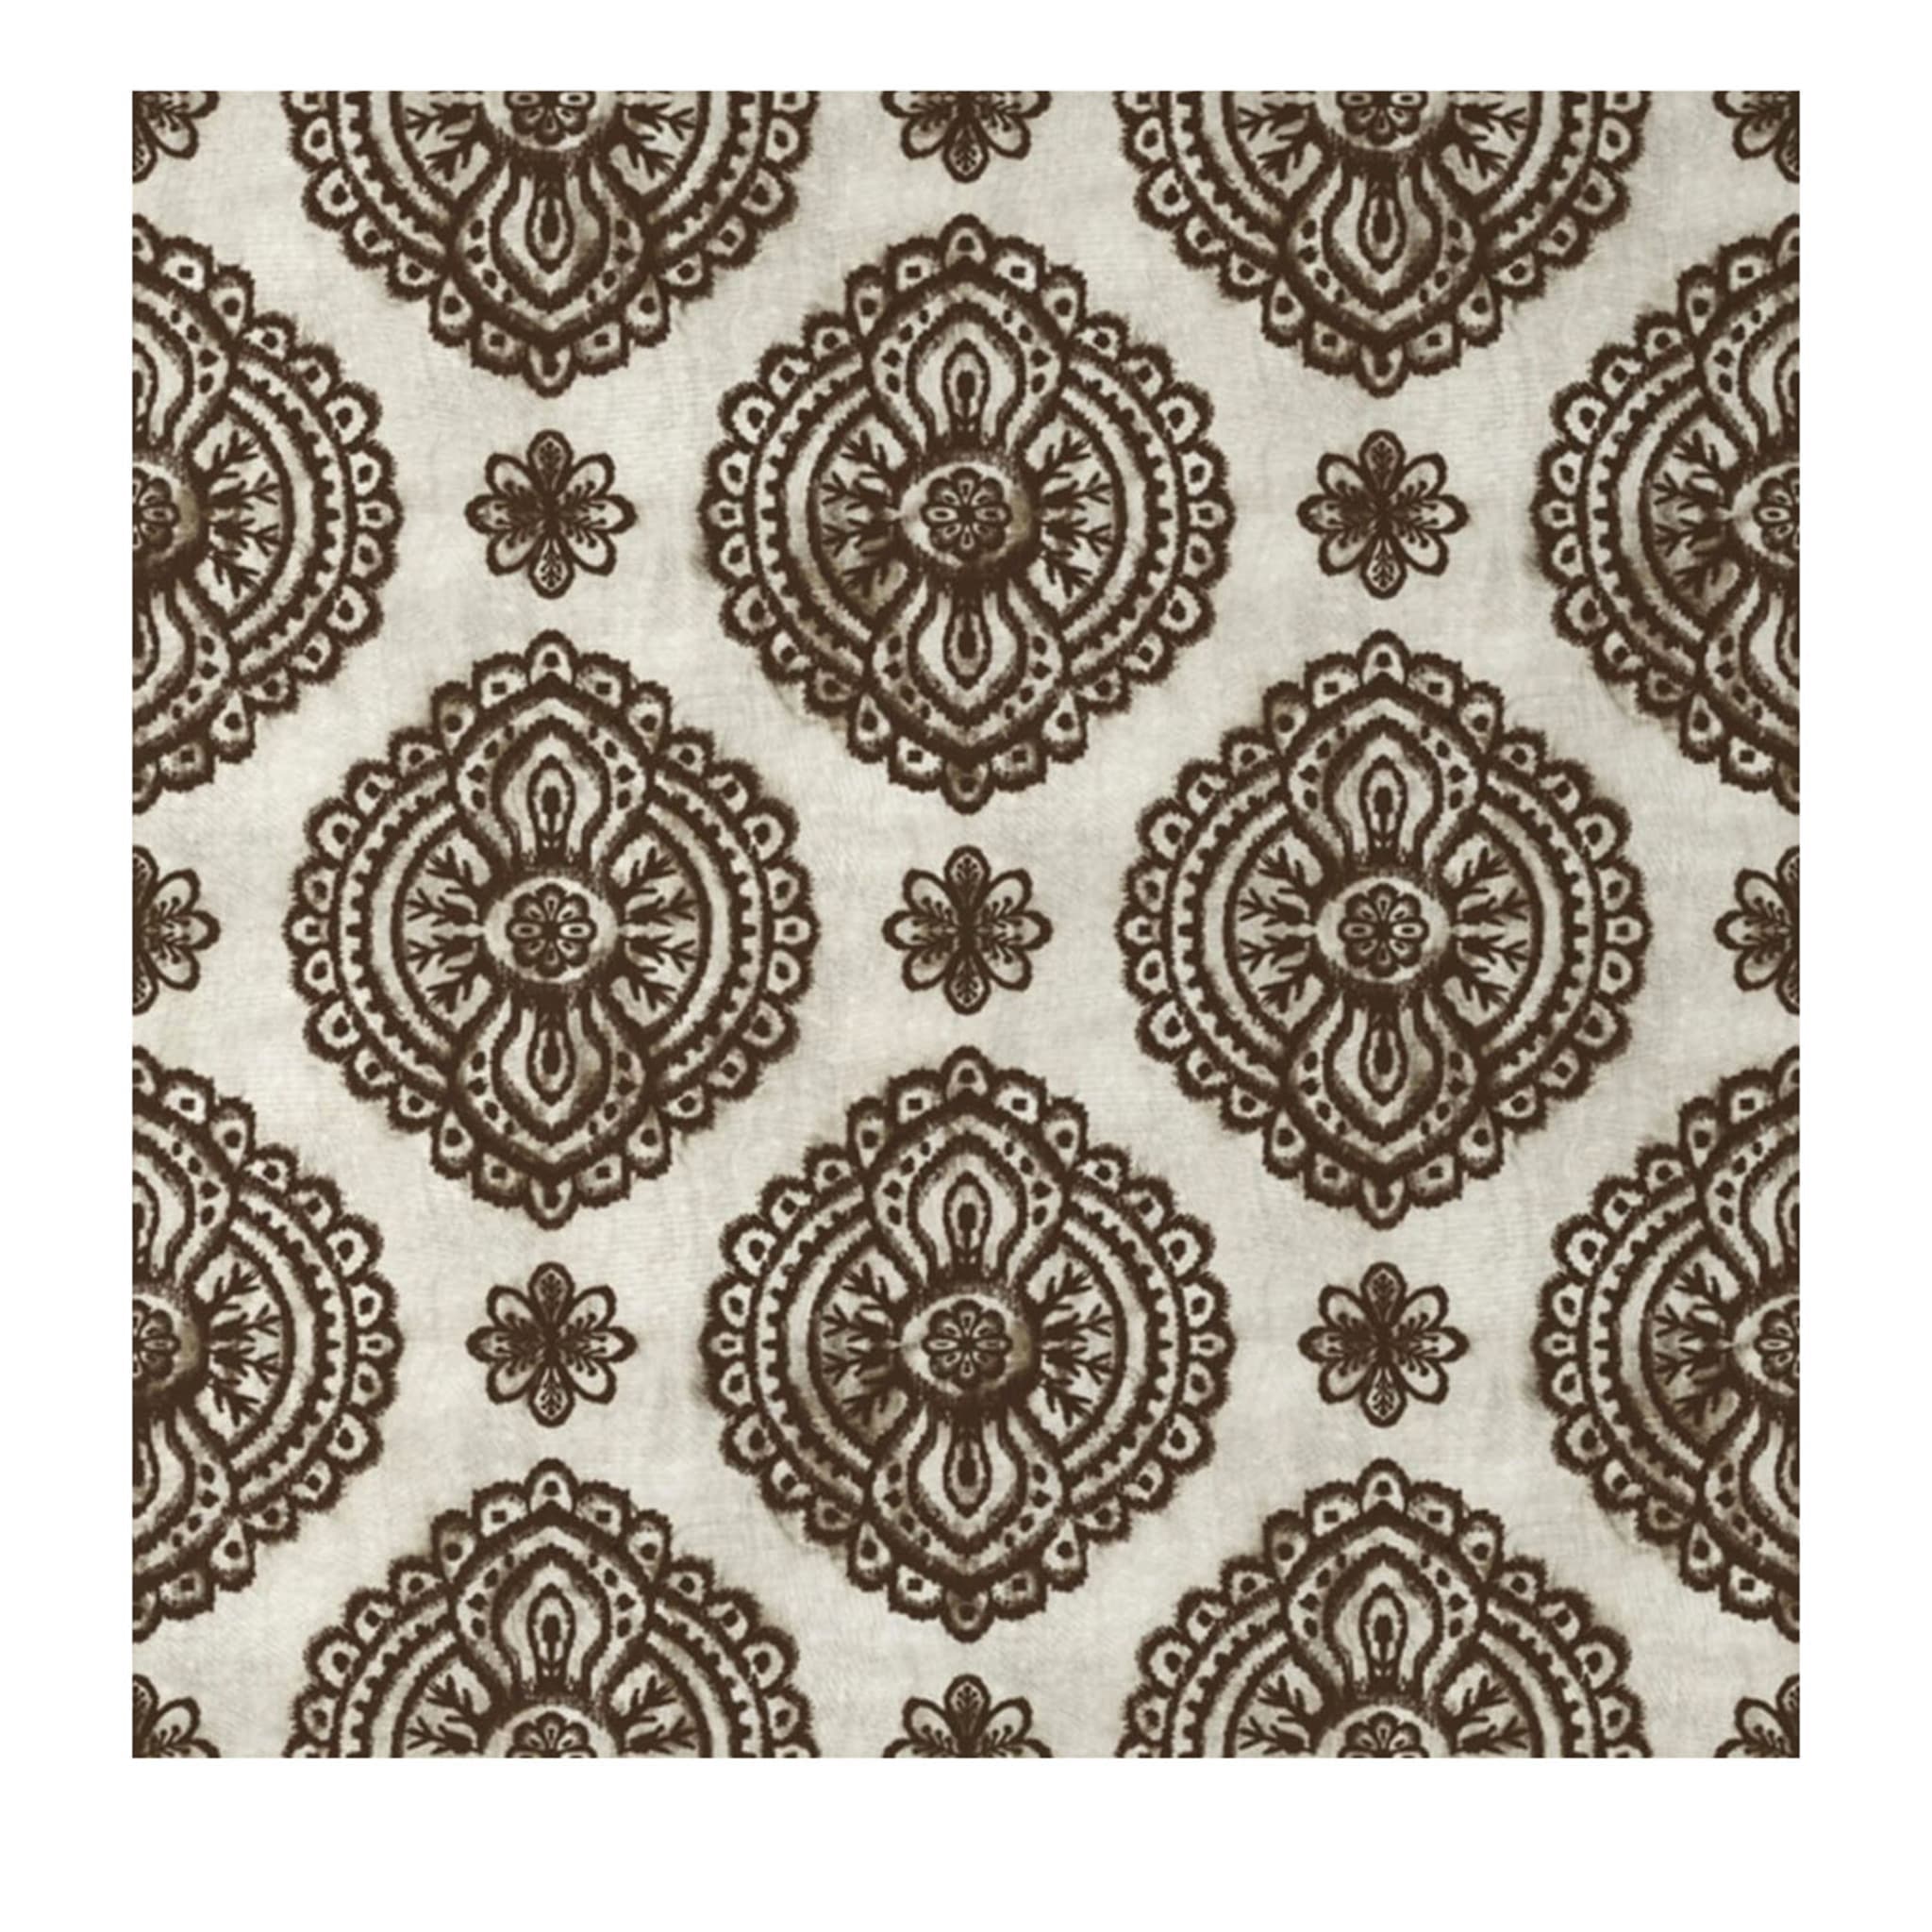 Pacri Chocolate Wallpaper - Main view